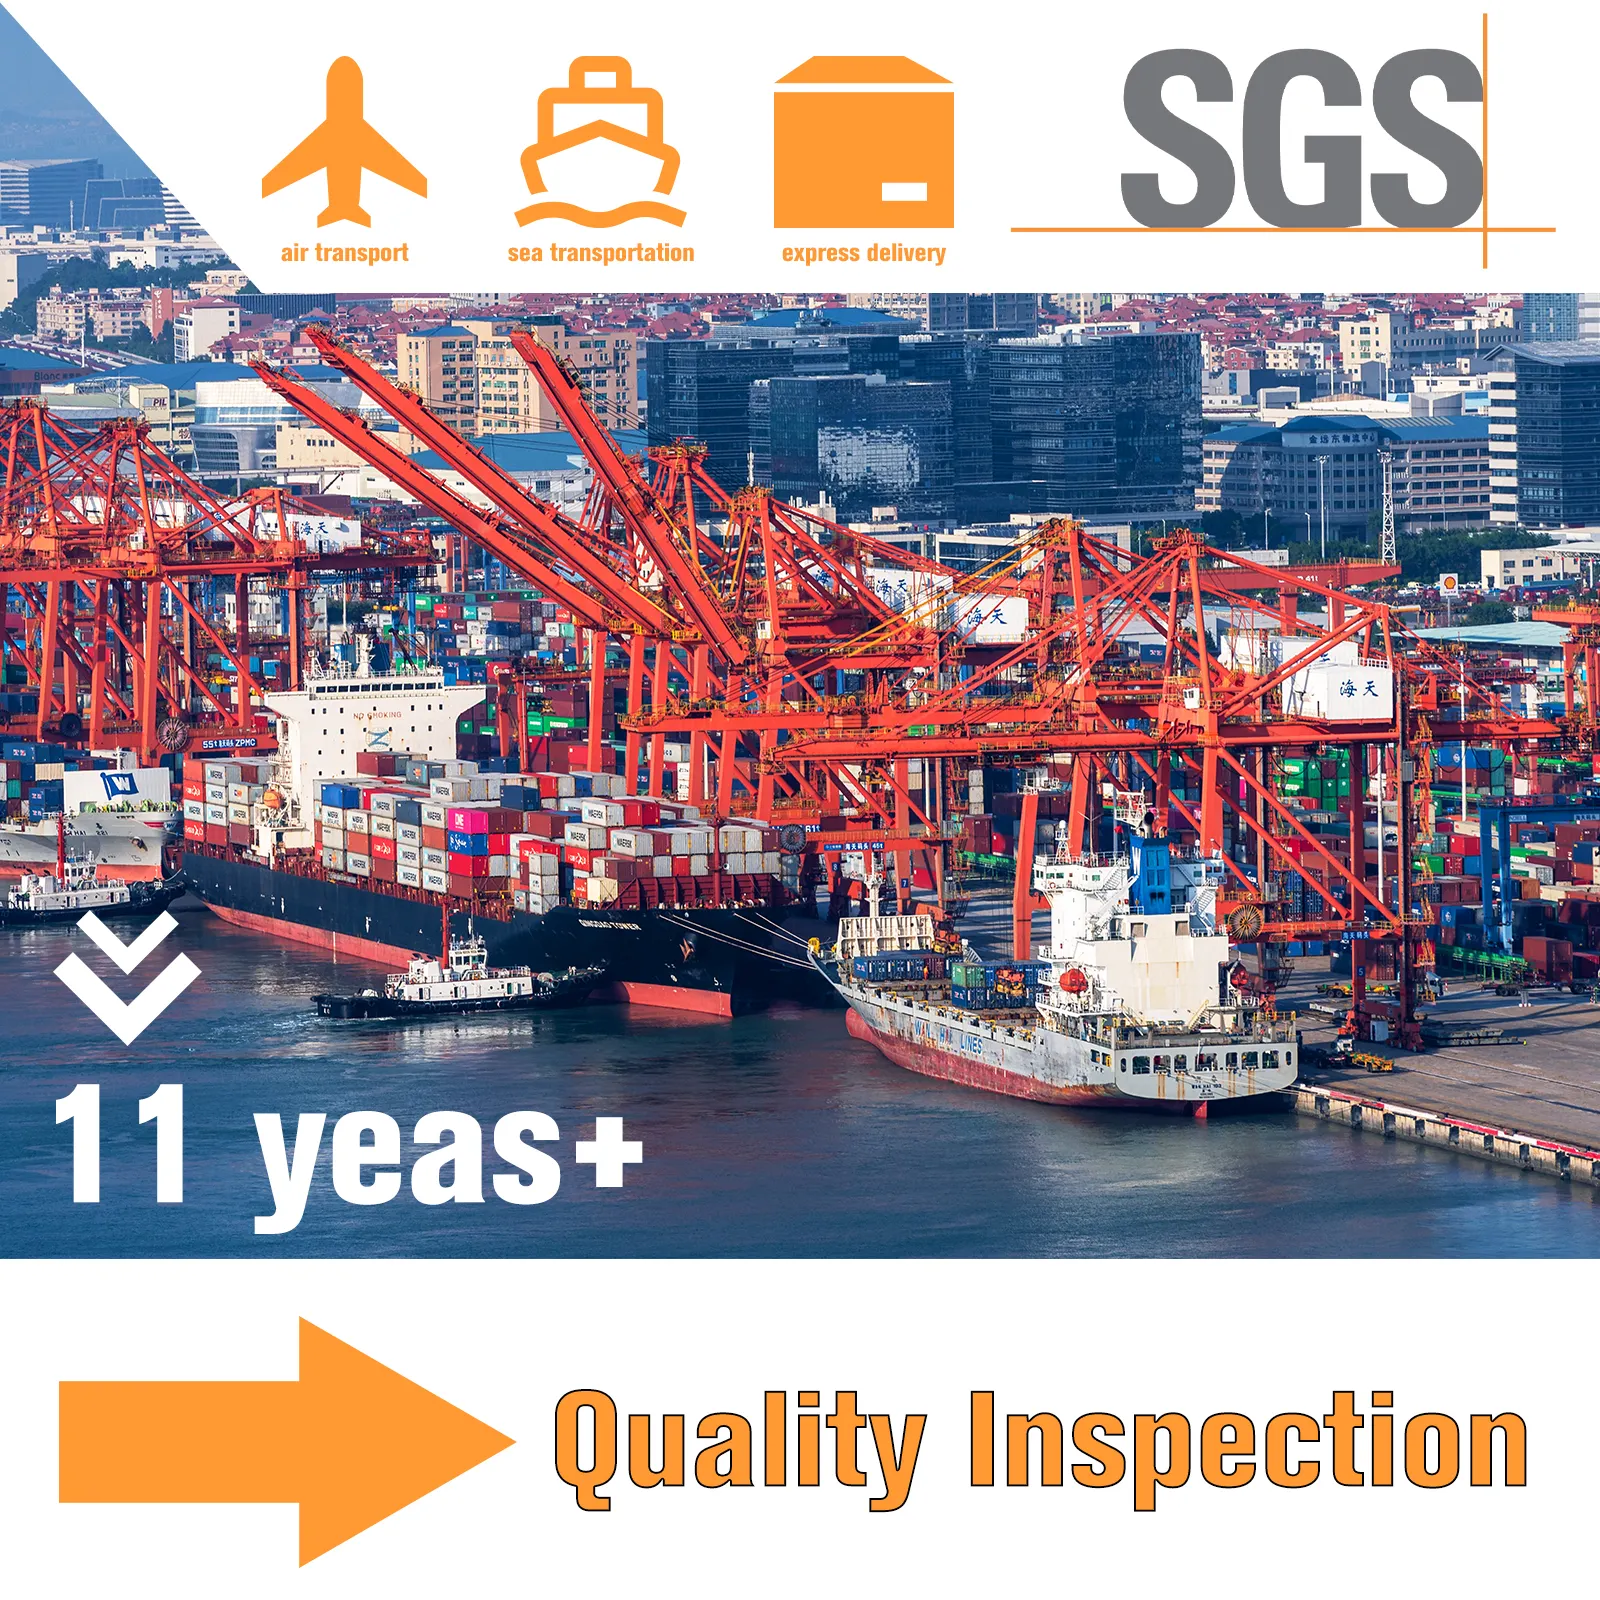 Servicio integral de alto valor para inspección de calidad/transporte de carga/almacenamiento desde China a los Estados Unidos/Europa